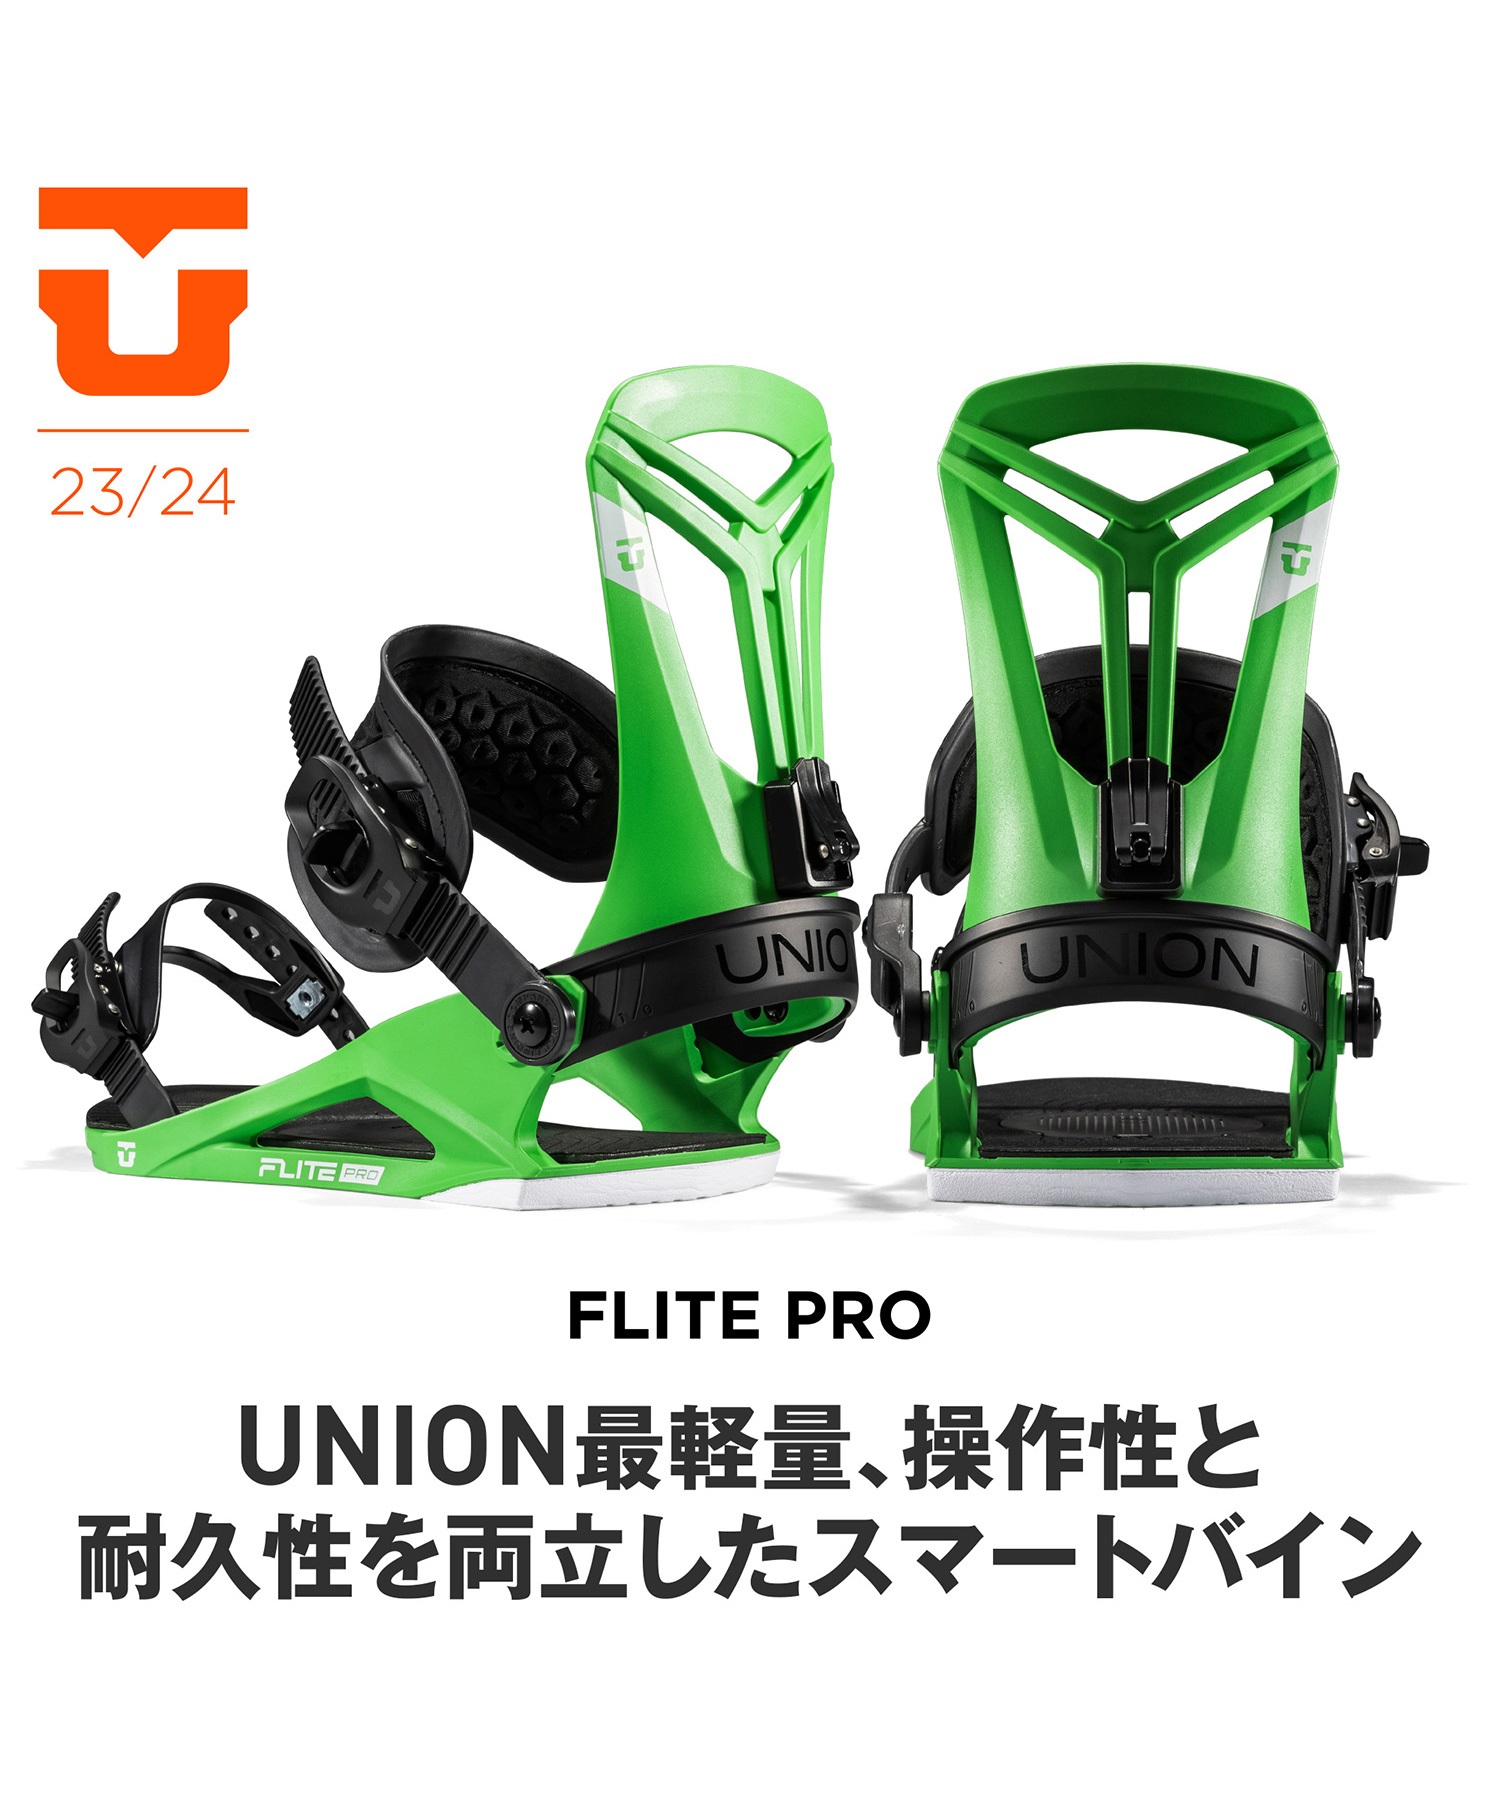 スノーボード バインディング メンズ UNION ユニオン FLITE PRO 23-24モデル ムラサキスポーツ KK B16(PURPLE-S)